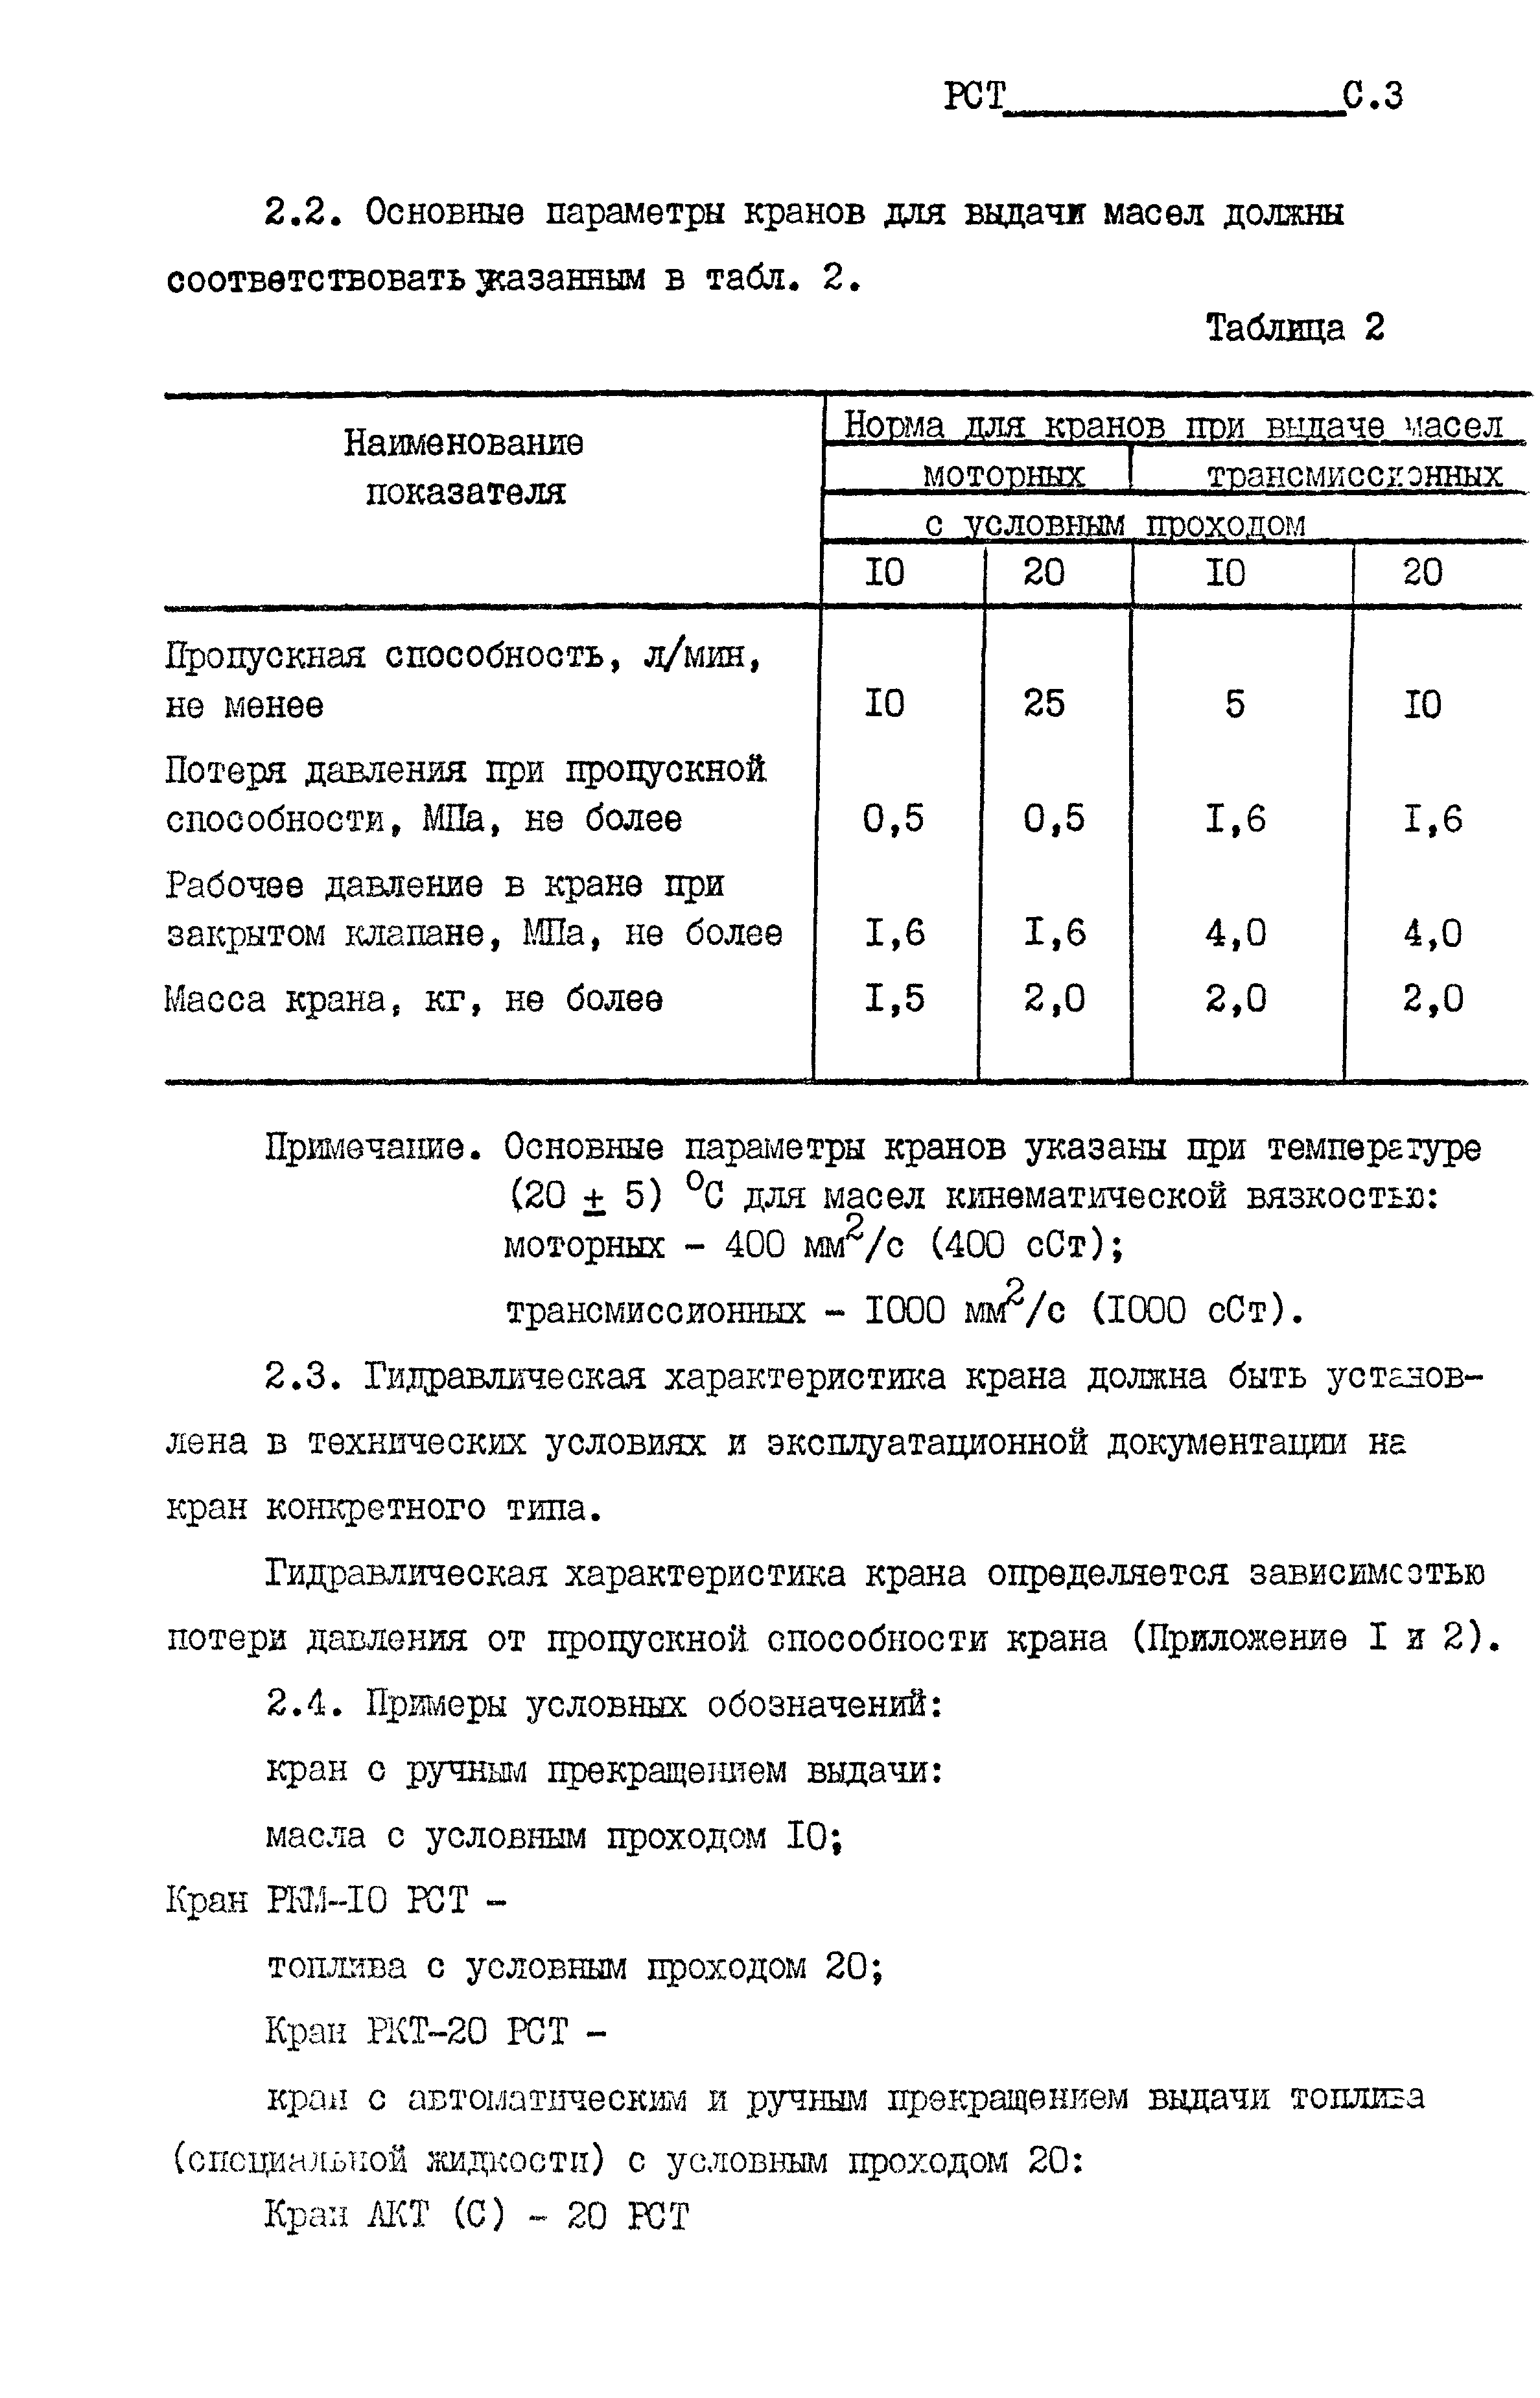 РСТ РСФСР 793-91